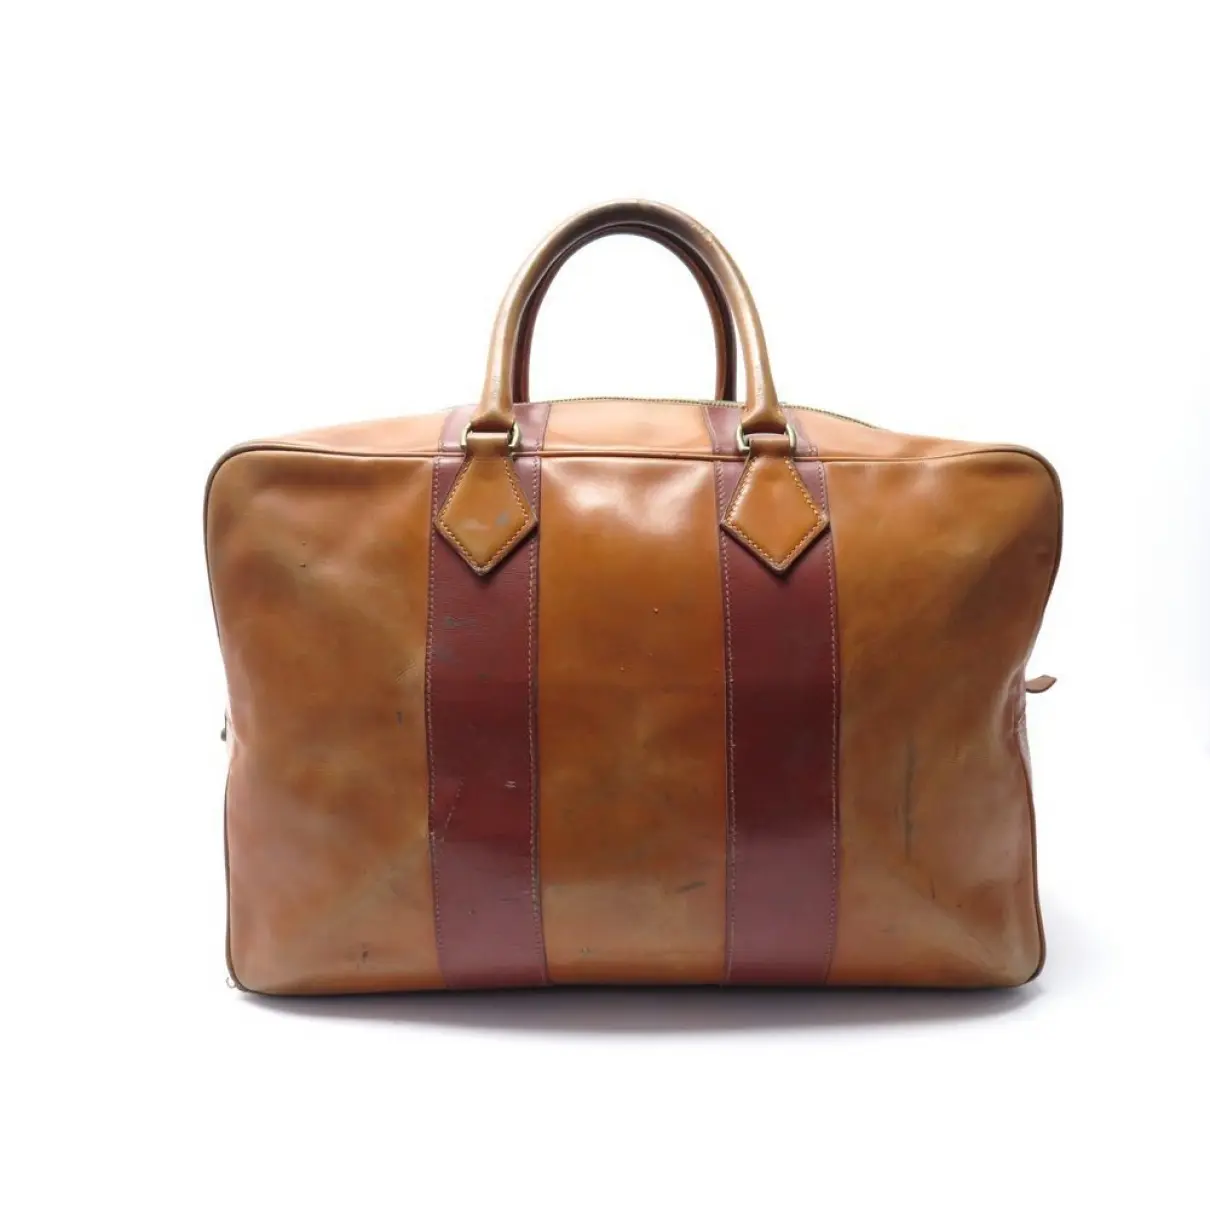 Buy Hermès Leather travel bag online - Vintage